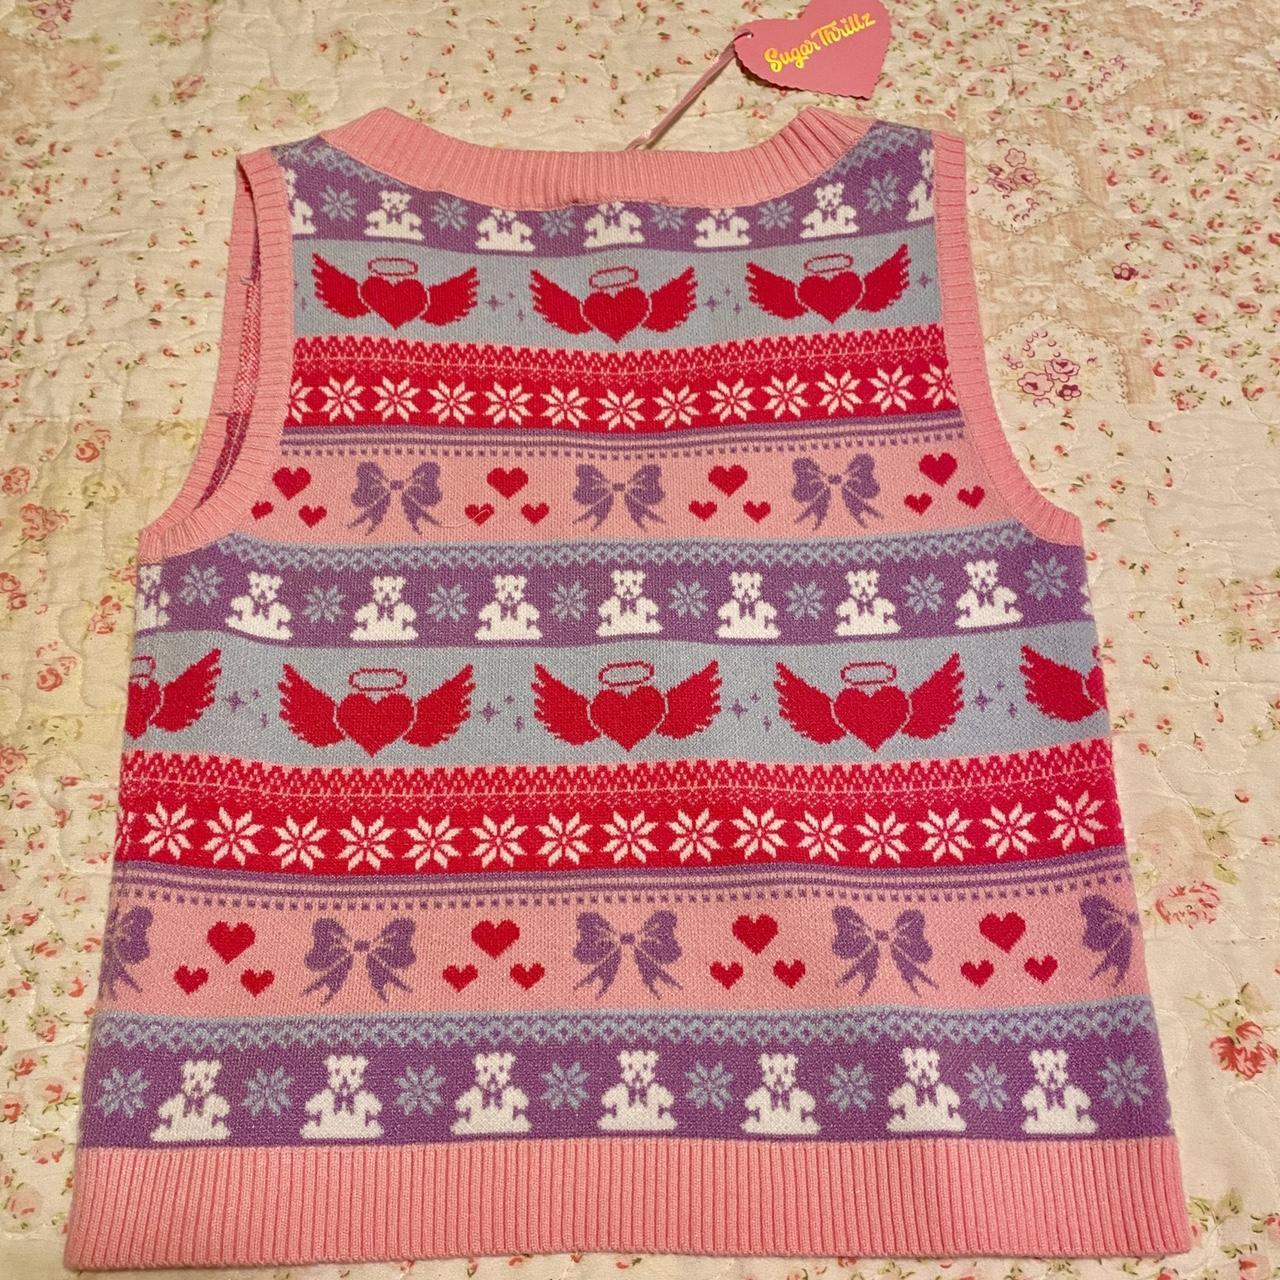 Sugar Thrillz Heart Fairisle Intarsia Sweater Vest - Pink Multi